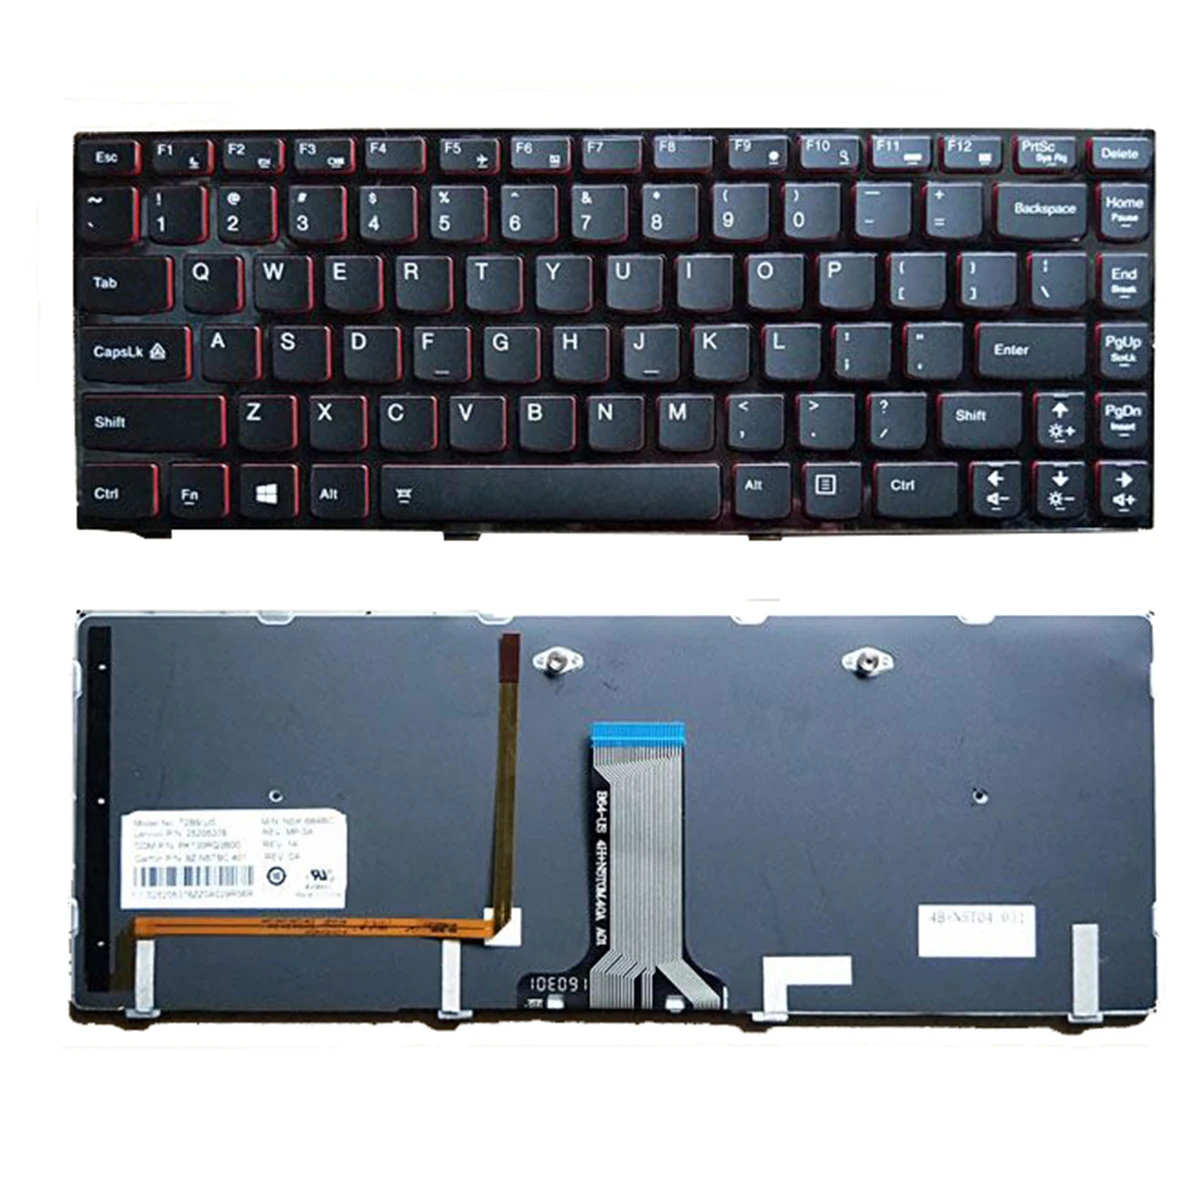 

New Keyboard FOR LENOVO Y400 Y410 Y430P Y400P Y410P Y400N Y410N US Backlight laptop keyboard